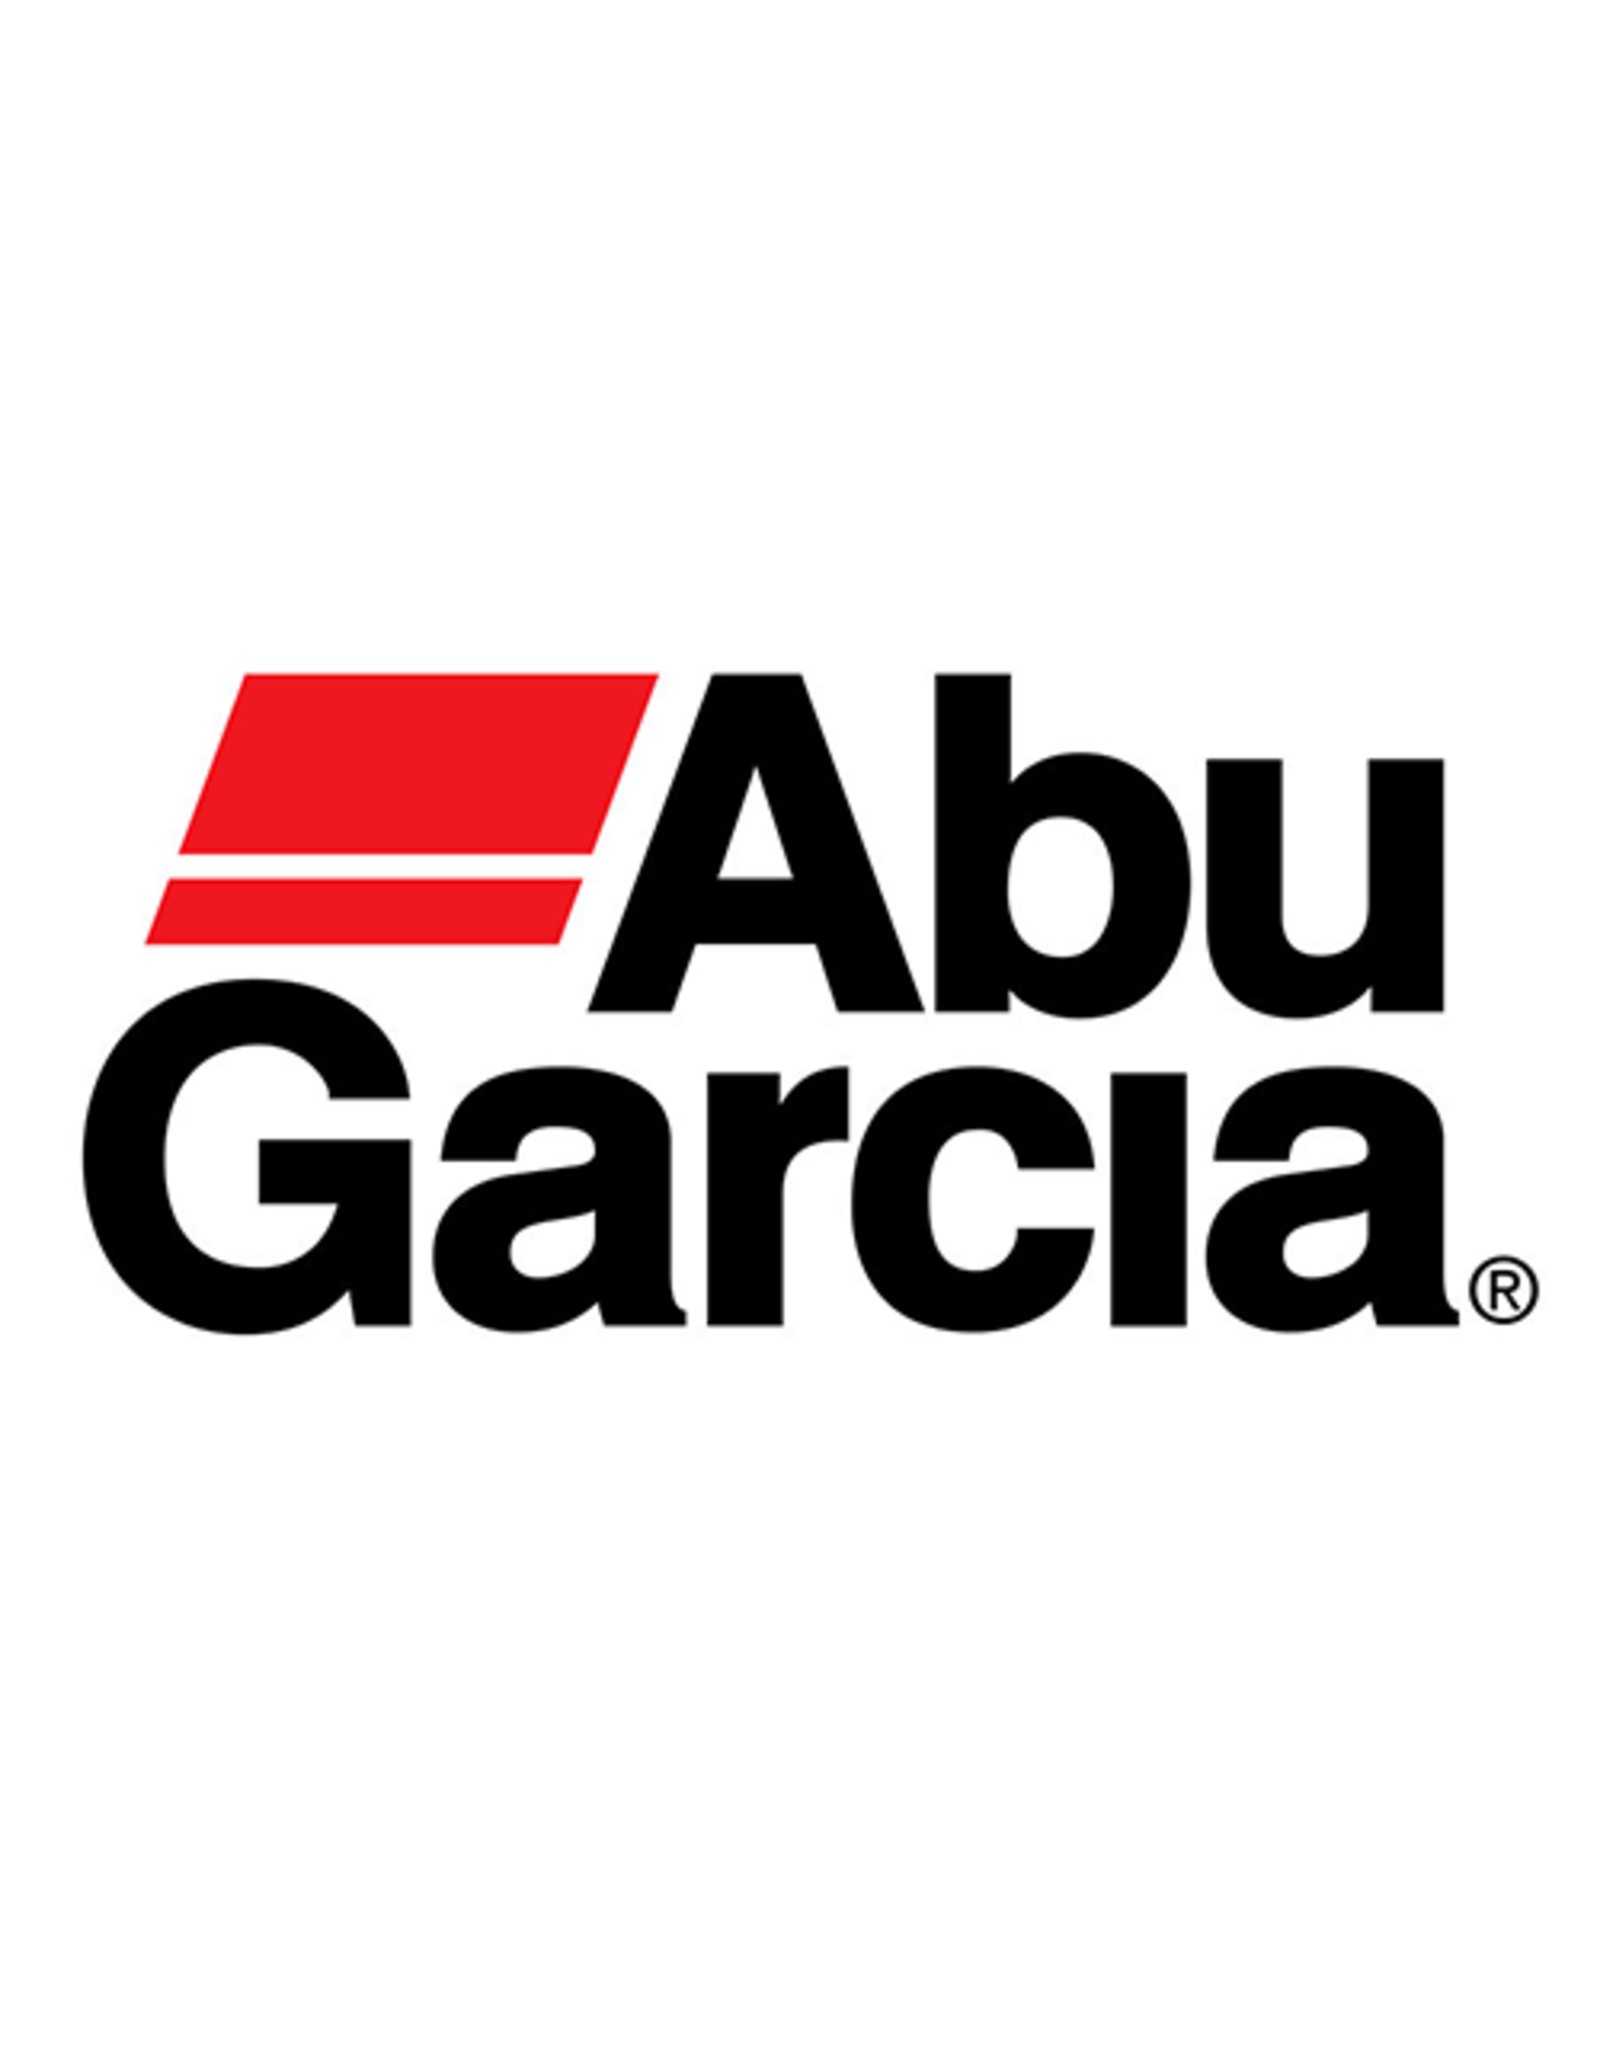 Abu Garcia 34282  HANDLE SCREW/NLA